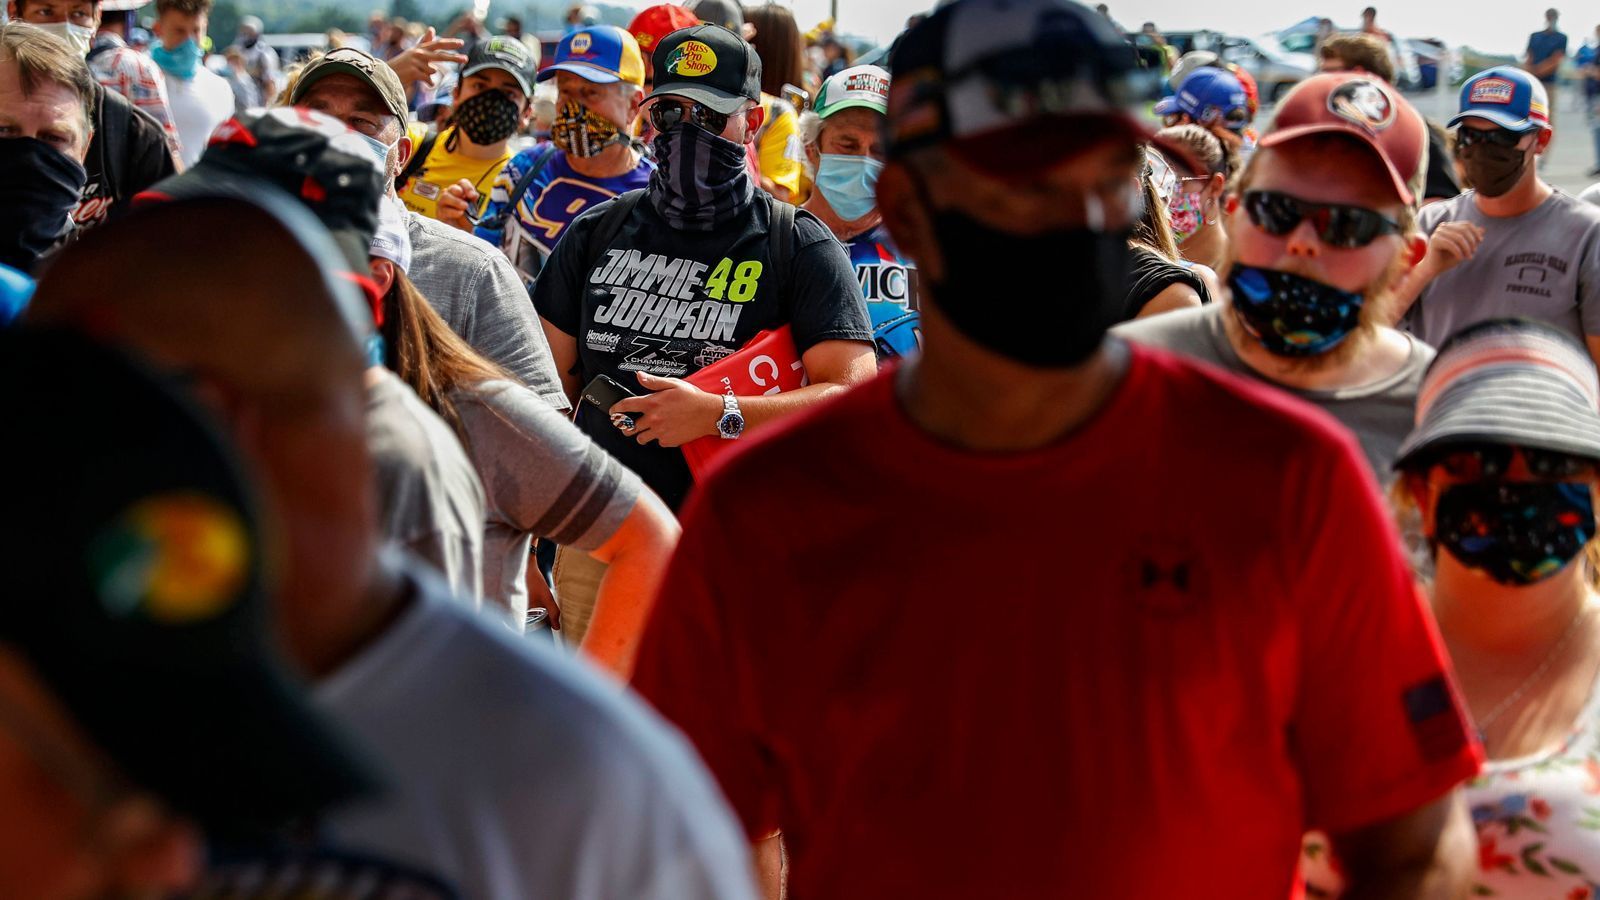 
                <strong>Trotz Coronavirus-Alarm: 20.000 Fans bei der NASCAR</strong><br>
                Die Besucher mussten zunächst einen Mund-Nasen-Schutz tragen, konnten diesen an ihrem Platz aber wieder ablegen. Bilder von der Rennstrecke sorgen angesichts der Zahlen aus den USA aber ganz generell für Stirnrunzeln.
              